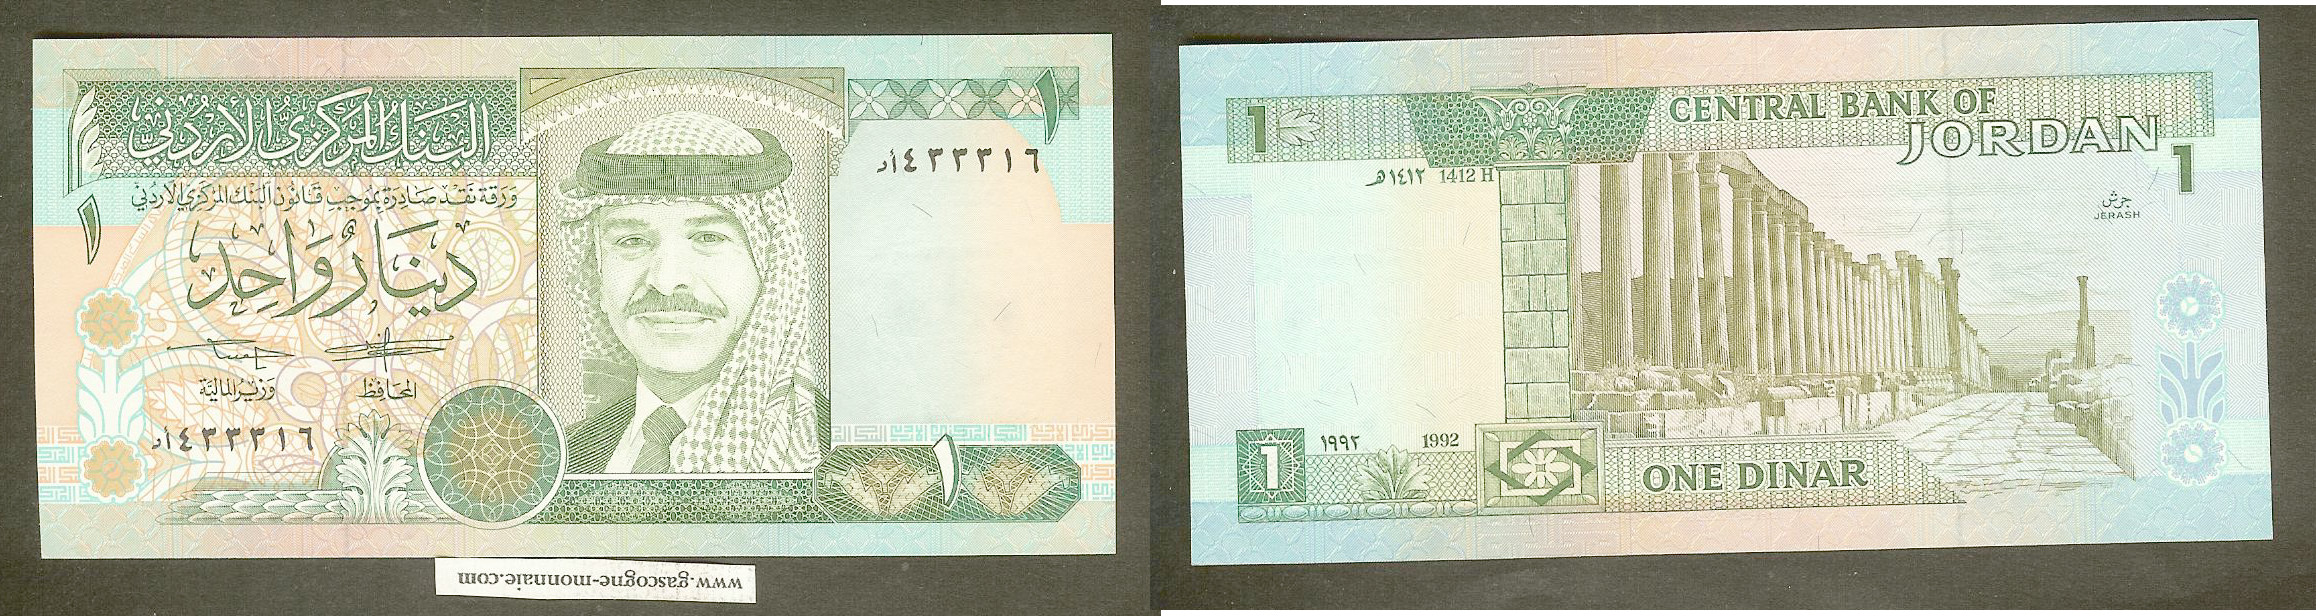 Jordan 1 dinar 1992 New